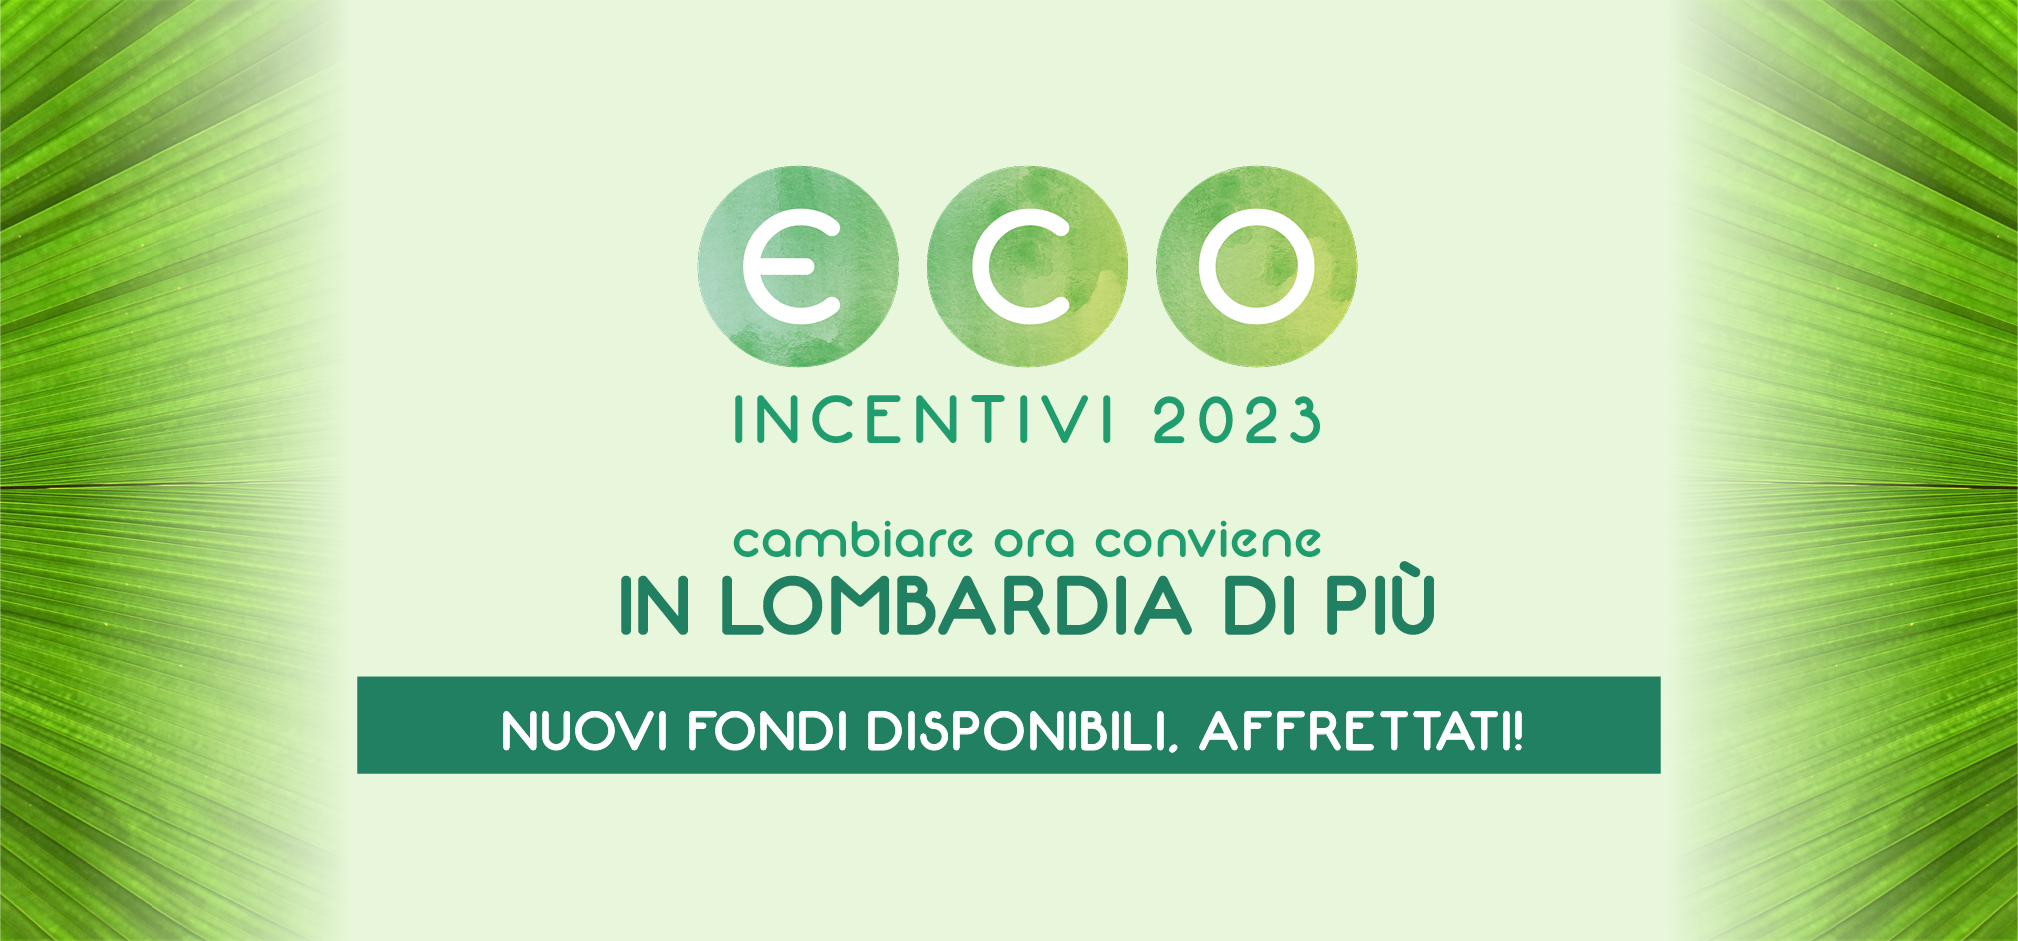 In Lombardia raddoppia l’ecobonus: è il momento giusto per cambiare auto  